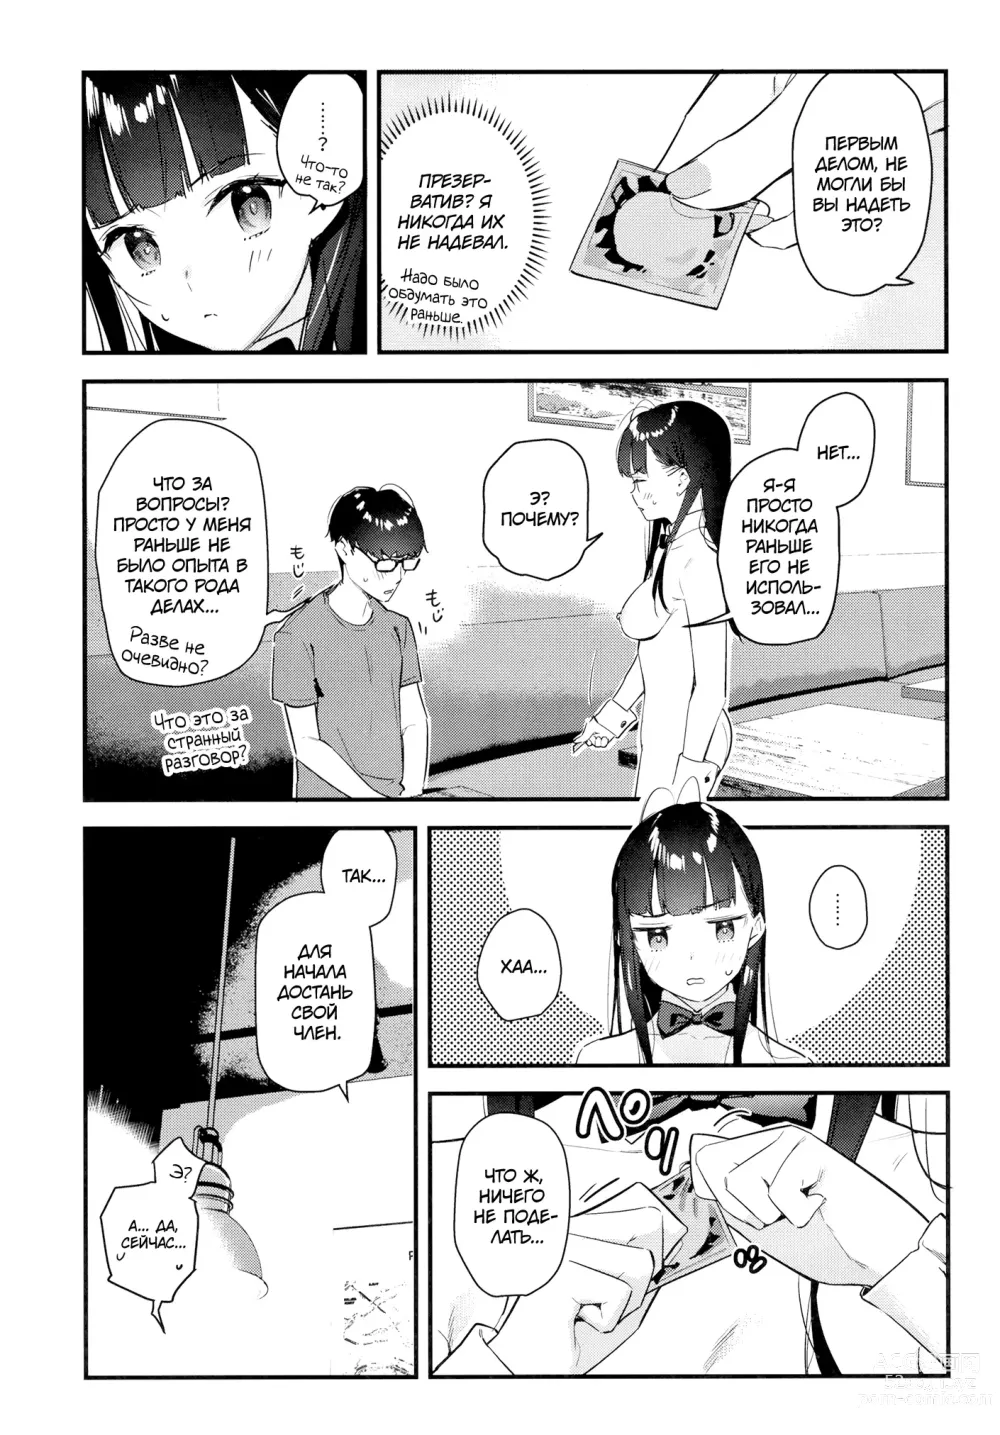 Page 24 of doujinshi Девушка, которая мне нравится, оказывает особые услуги постоянным клиентам